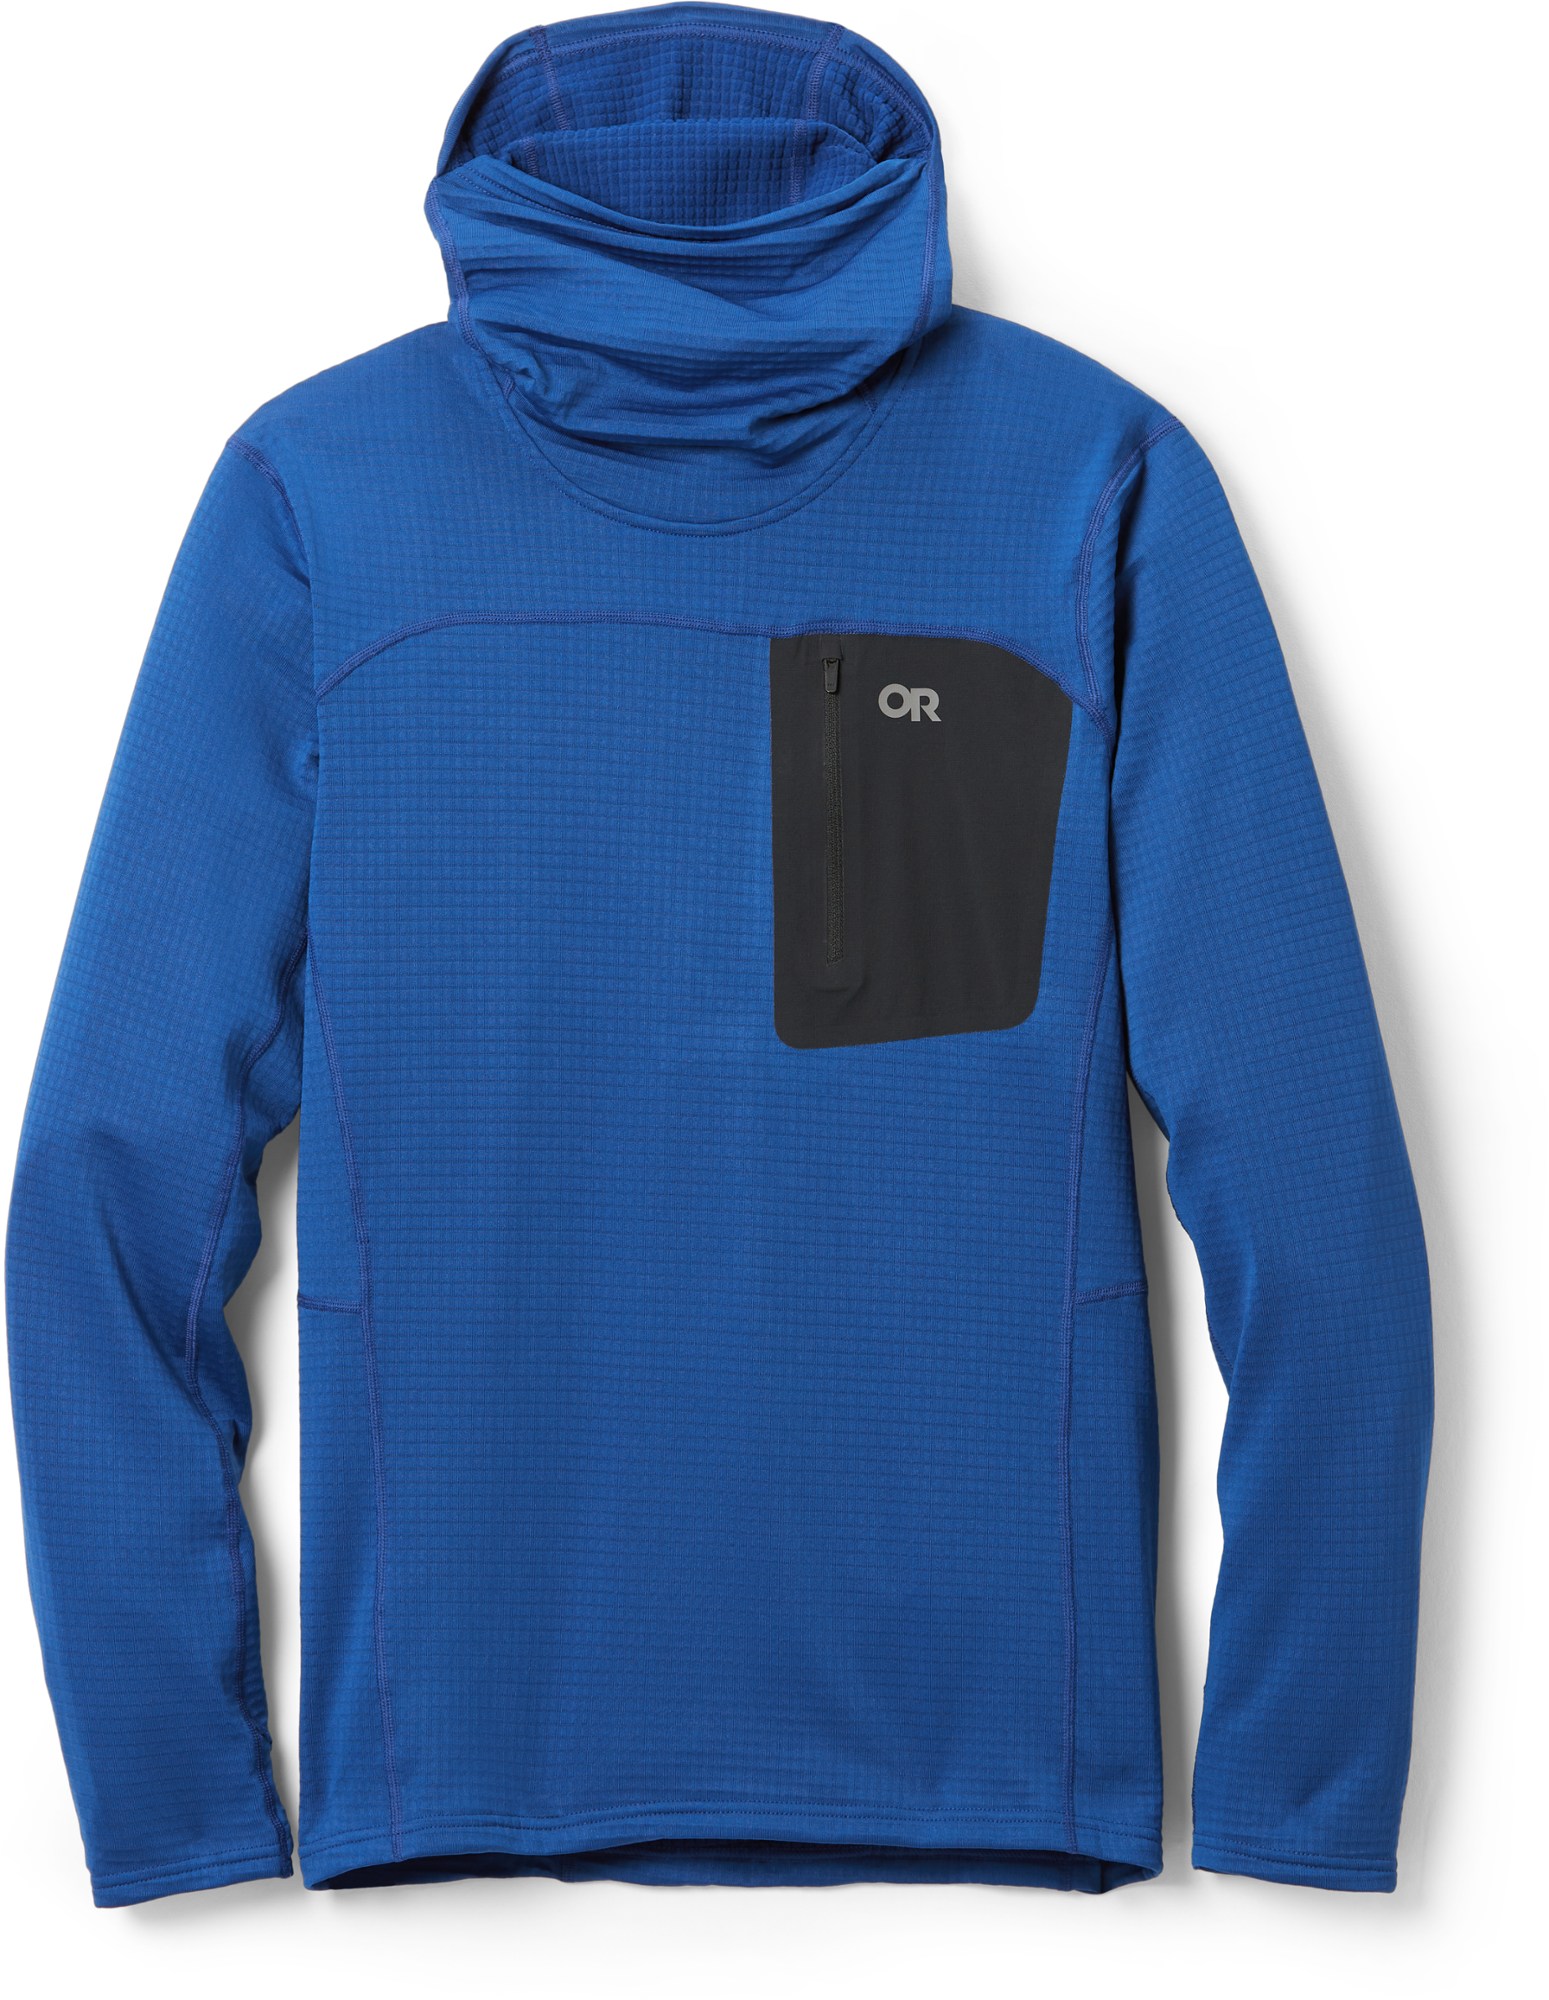 Флисовый пуловер с капюшоном Vigor Grid - Мужской Outdoor Research, синий